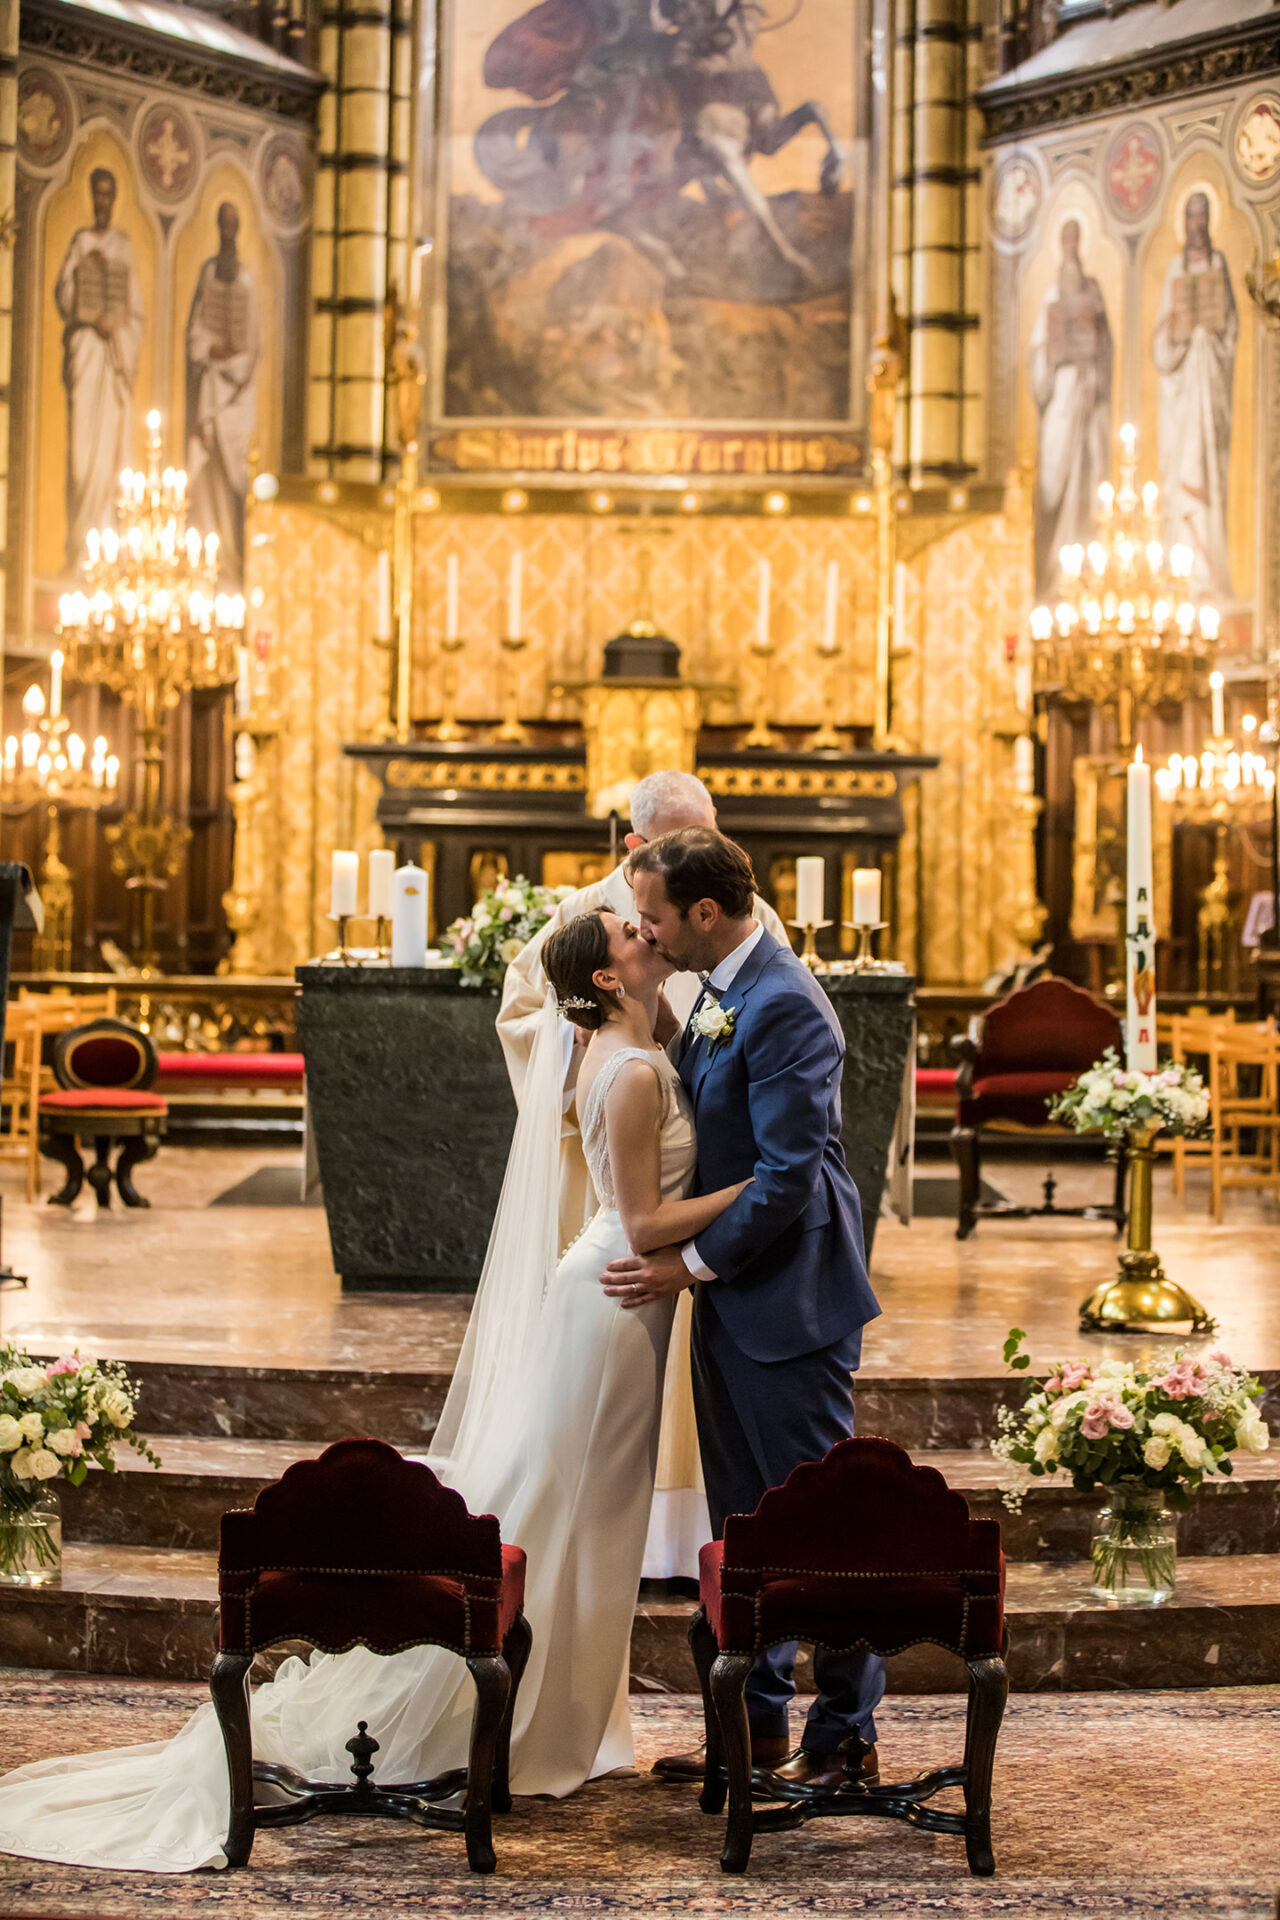 Huwelijk in de Sint Joris Kerk van Antwerpen